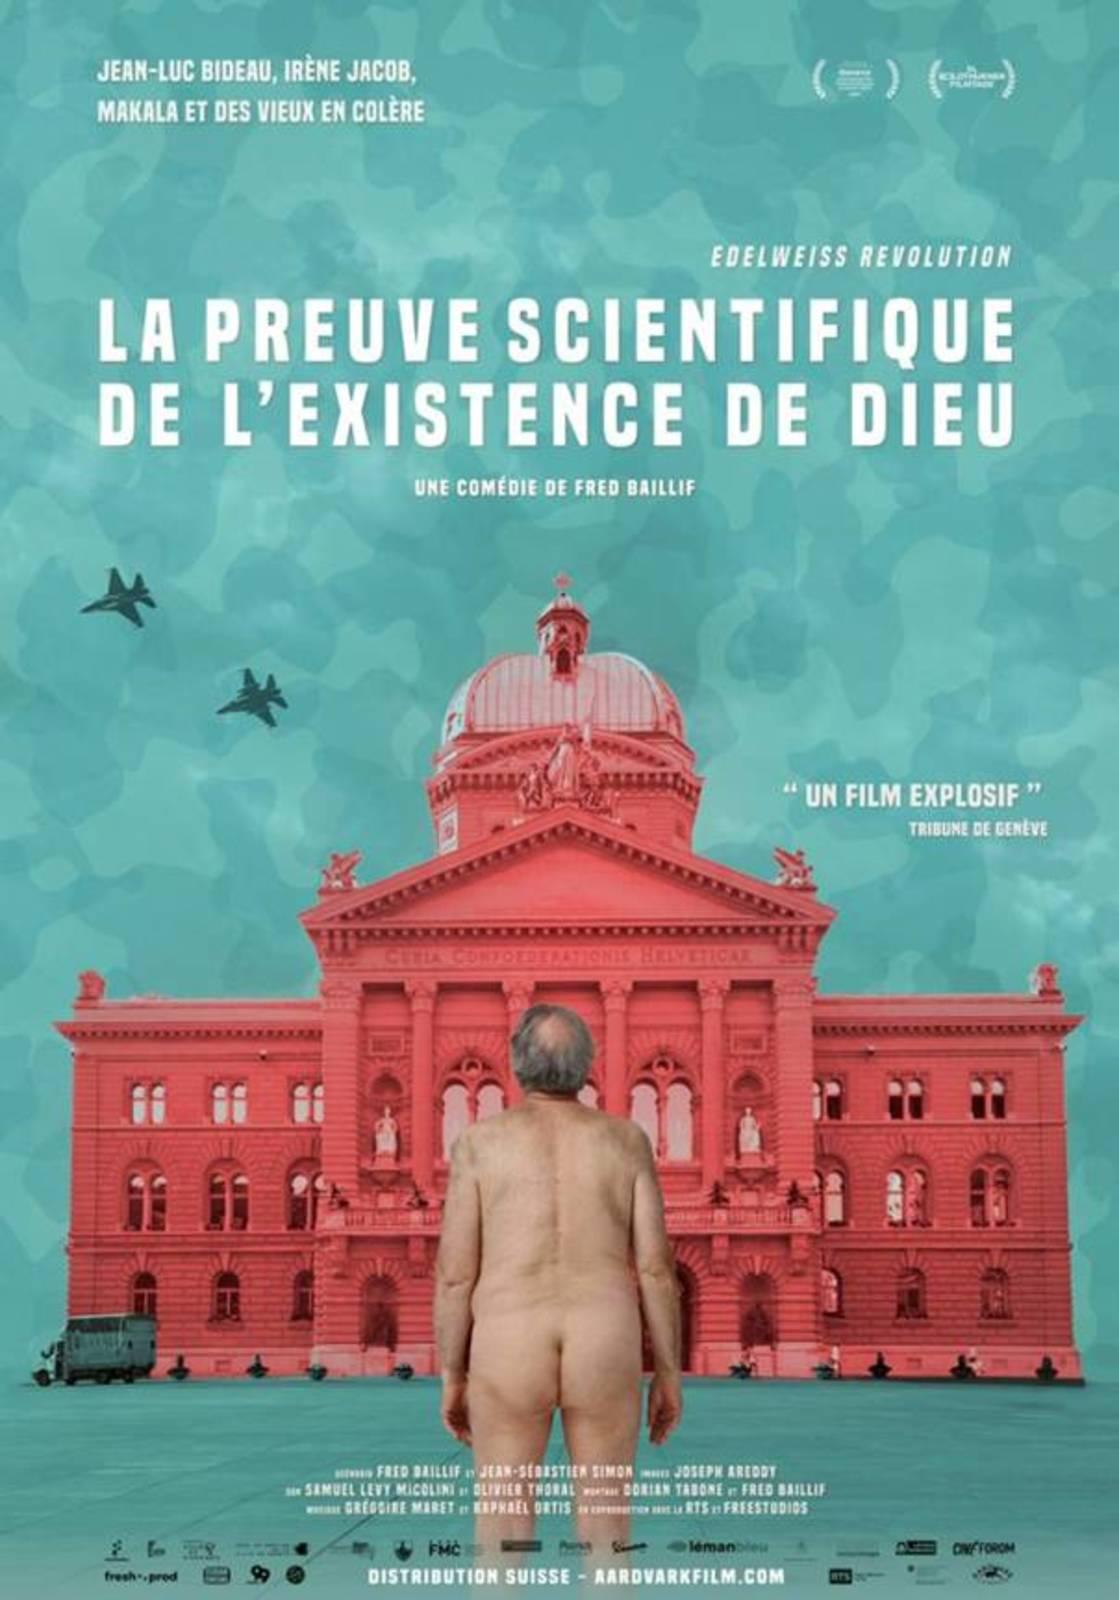 L'affiche du film "La Preuve scientifique de l’Existence de Dieu", de Frédéric Baillif. [facebook.com/pg/lapreuvescientifique]